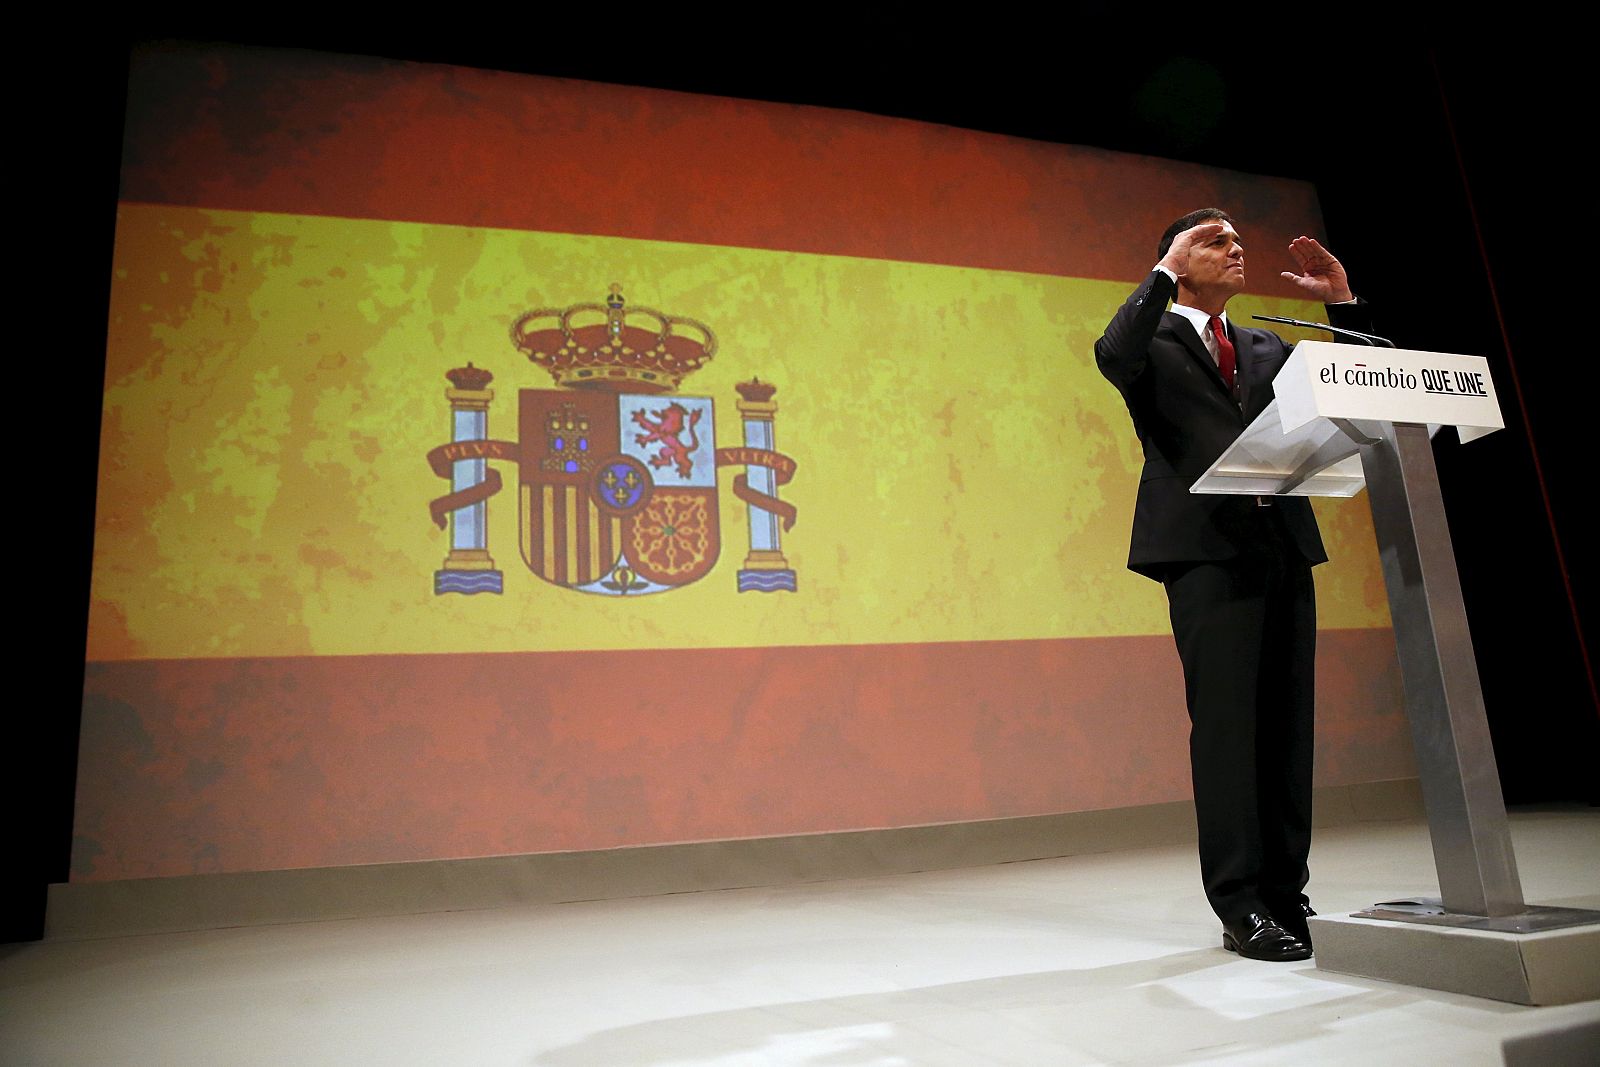 El secretario general del PSOE, Pedro Sánchez, explicó este lunes el uso de la bandera de España en el acto en el que fue proclamado candidato socialista a la Presidencia del Gobierno.